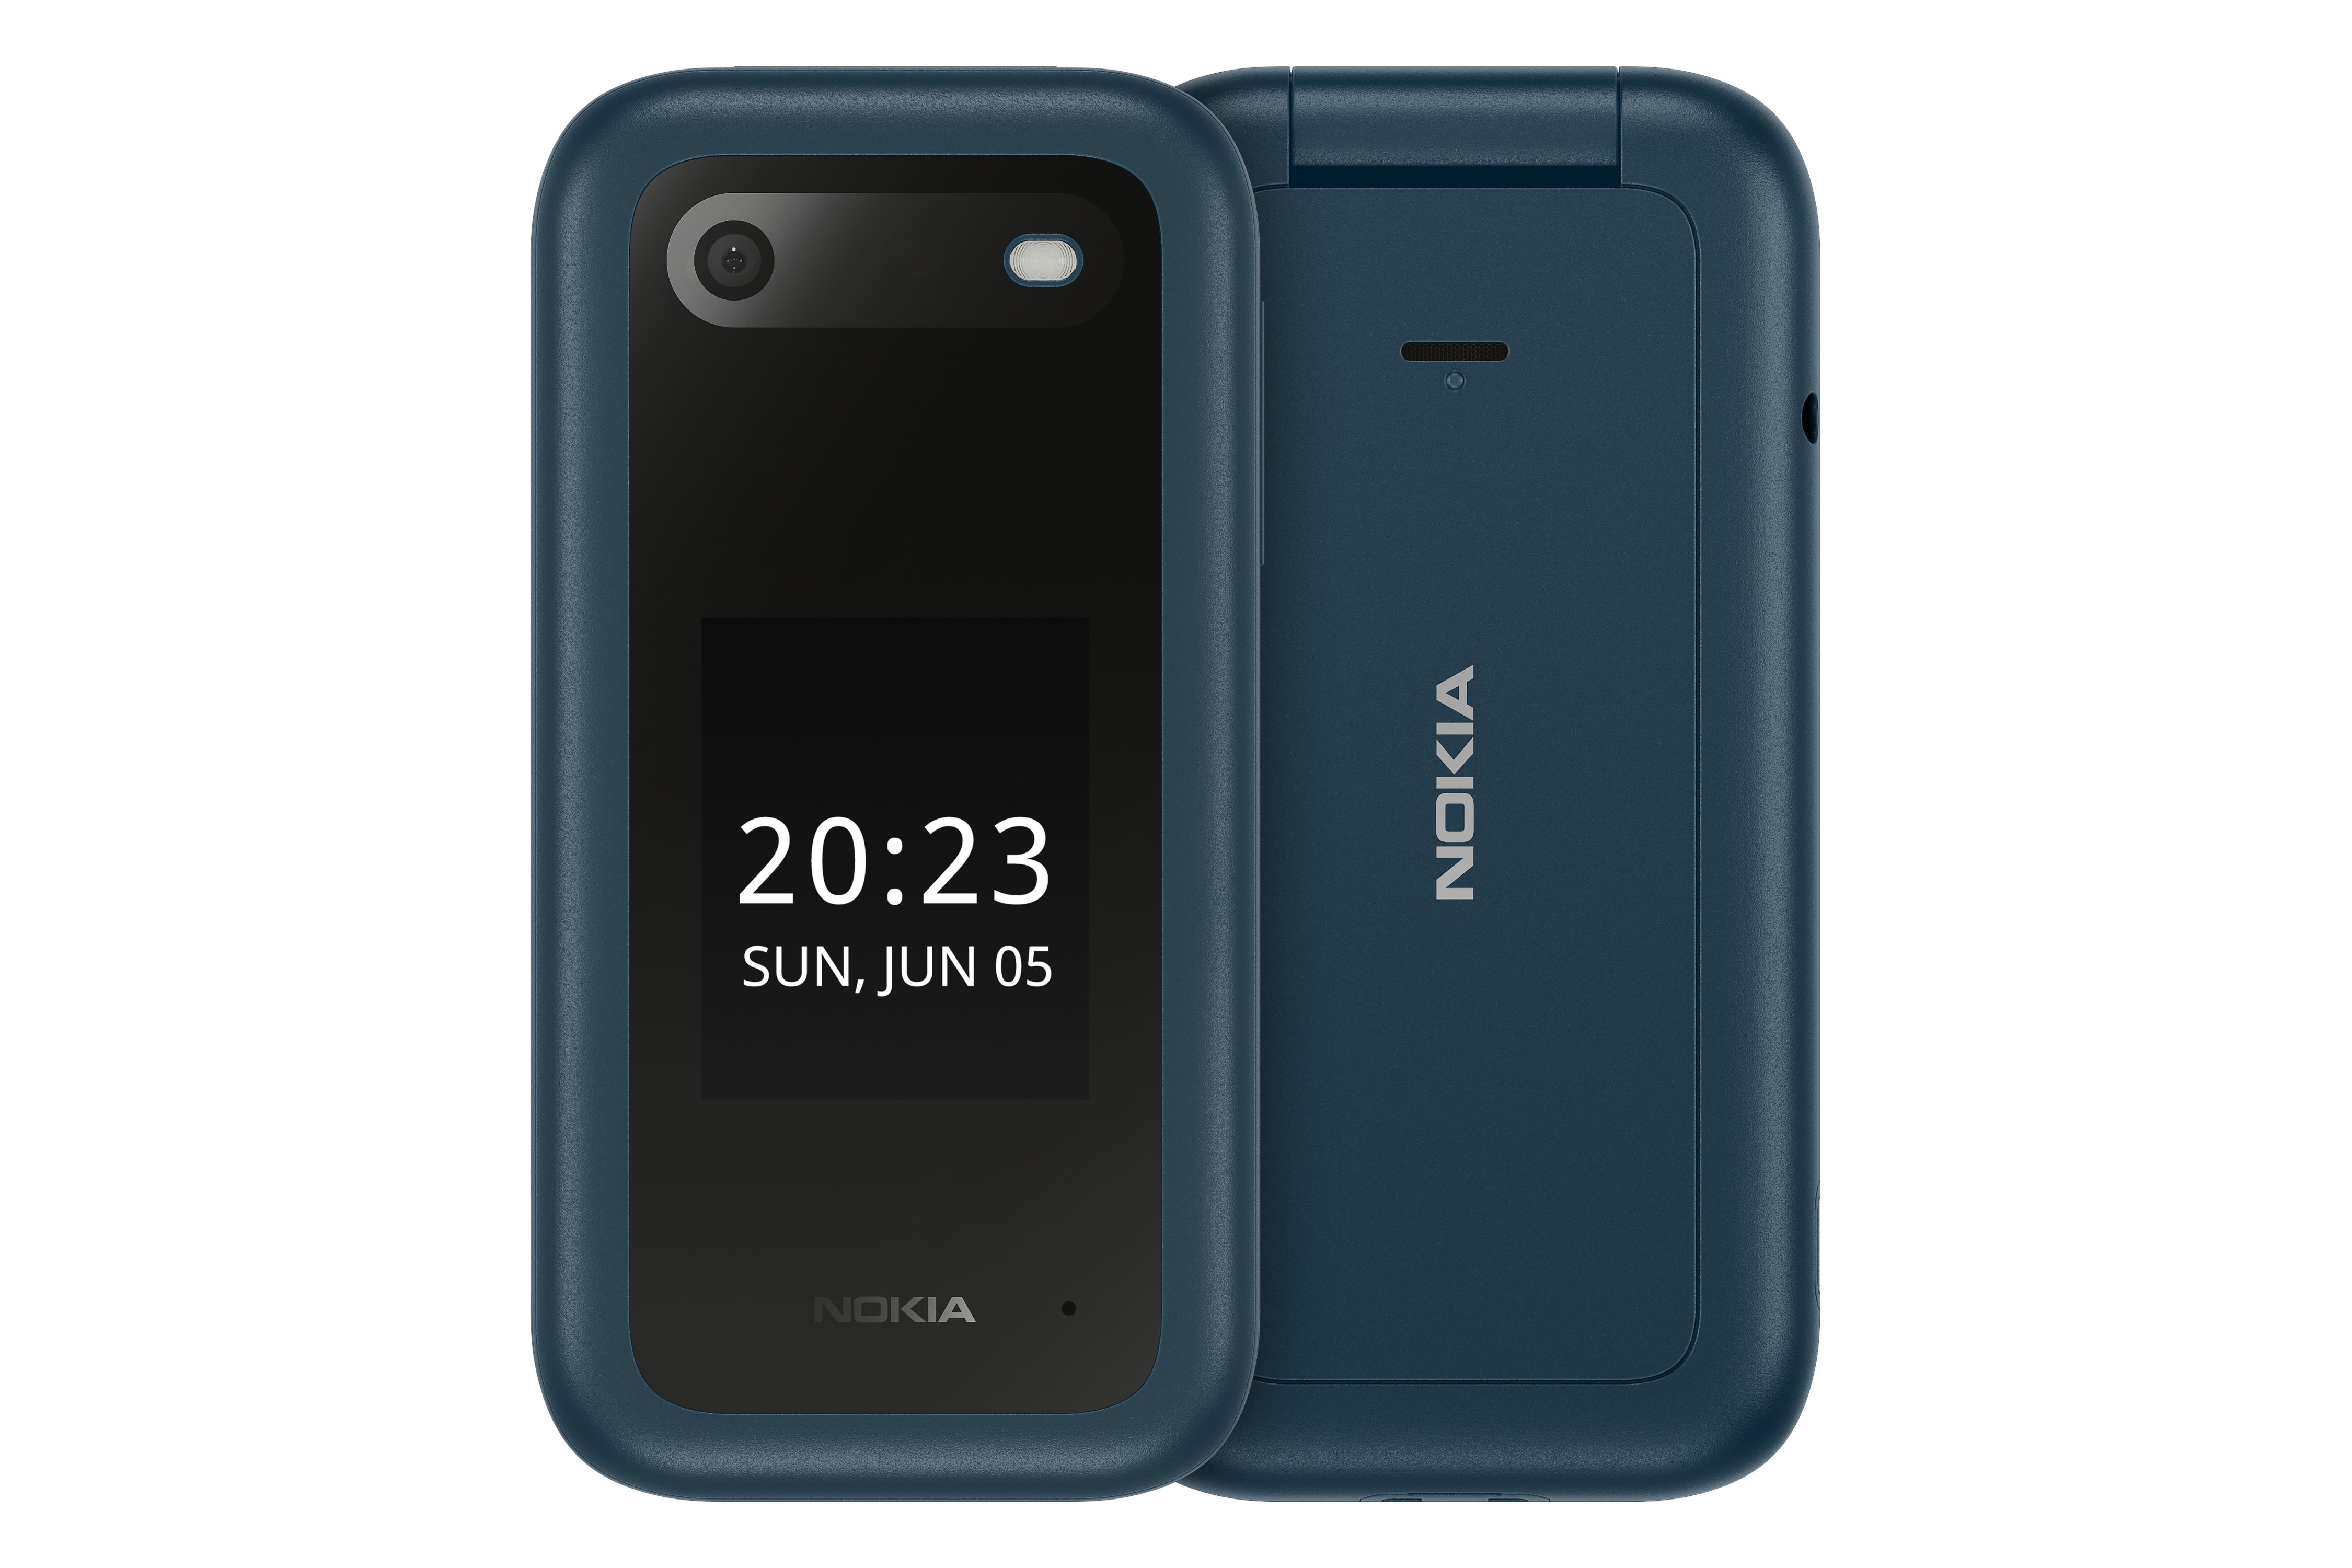 قیمت گوشی نوکیا 2660 Flip | Nokia 2660 Flip + مشخصات